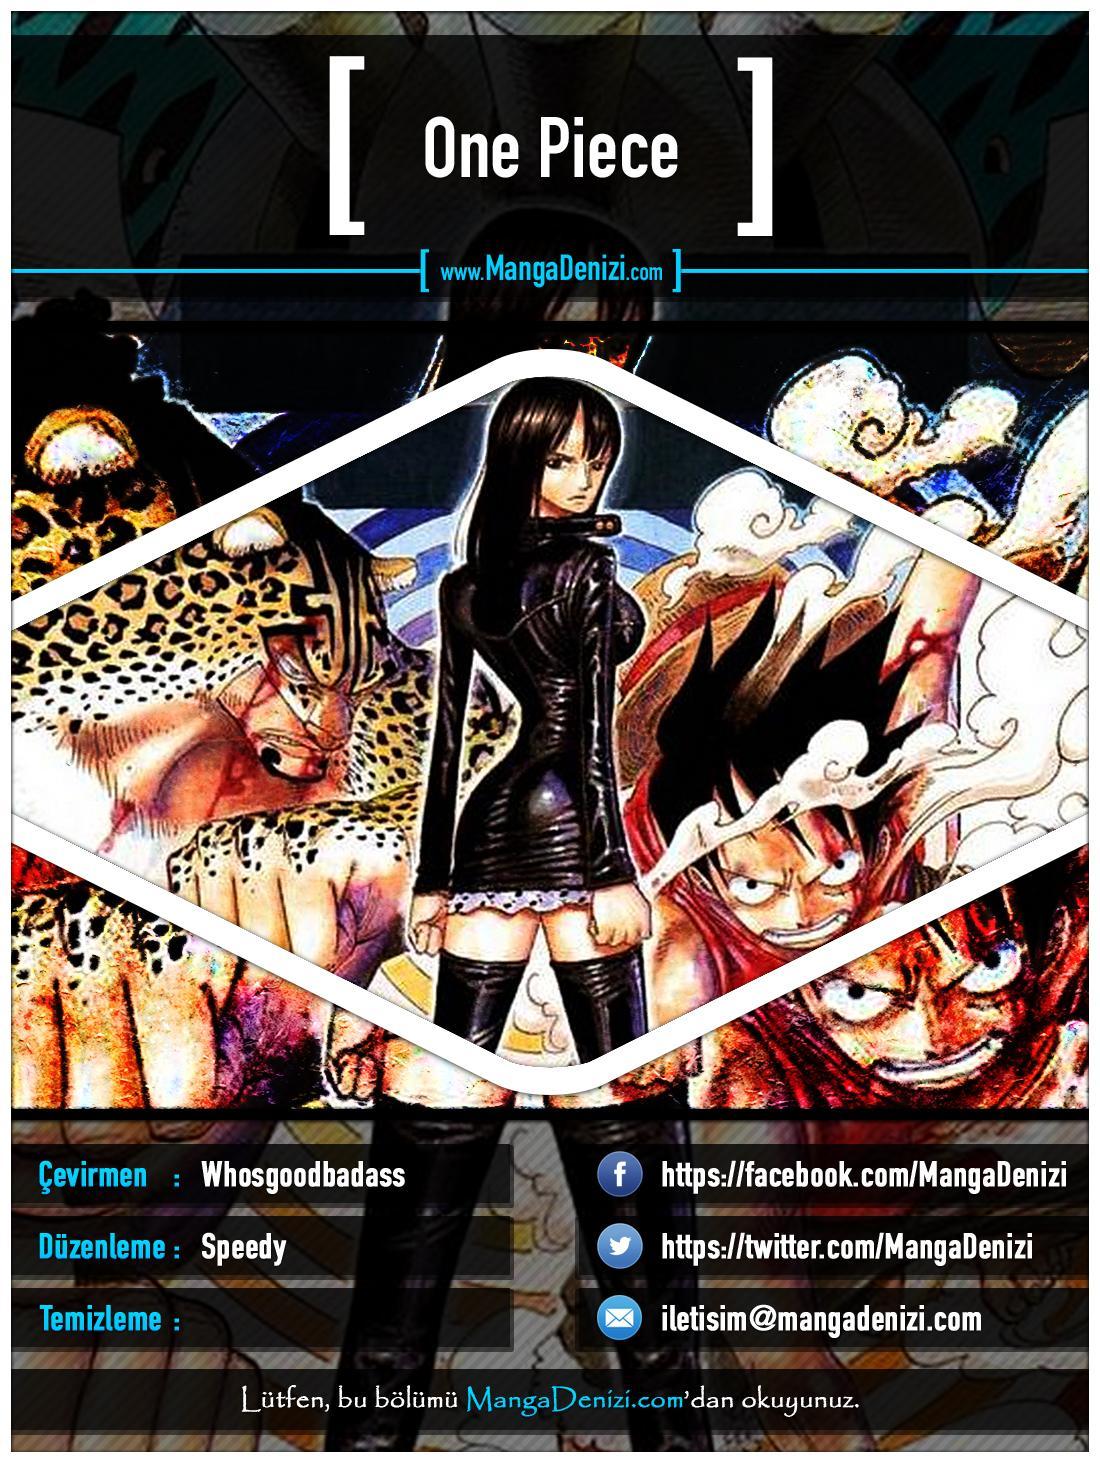 One Piece [Renkli] mangasının 0362 bölümünün 1. sayfasını okuyorsunuz.